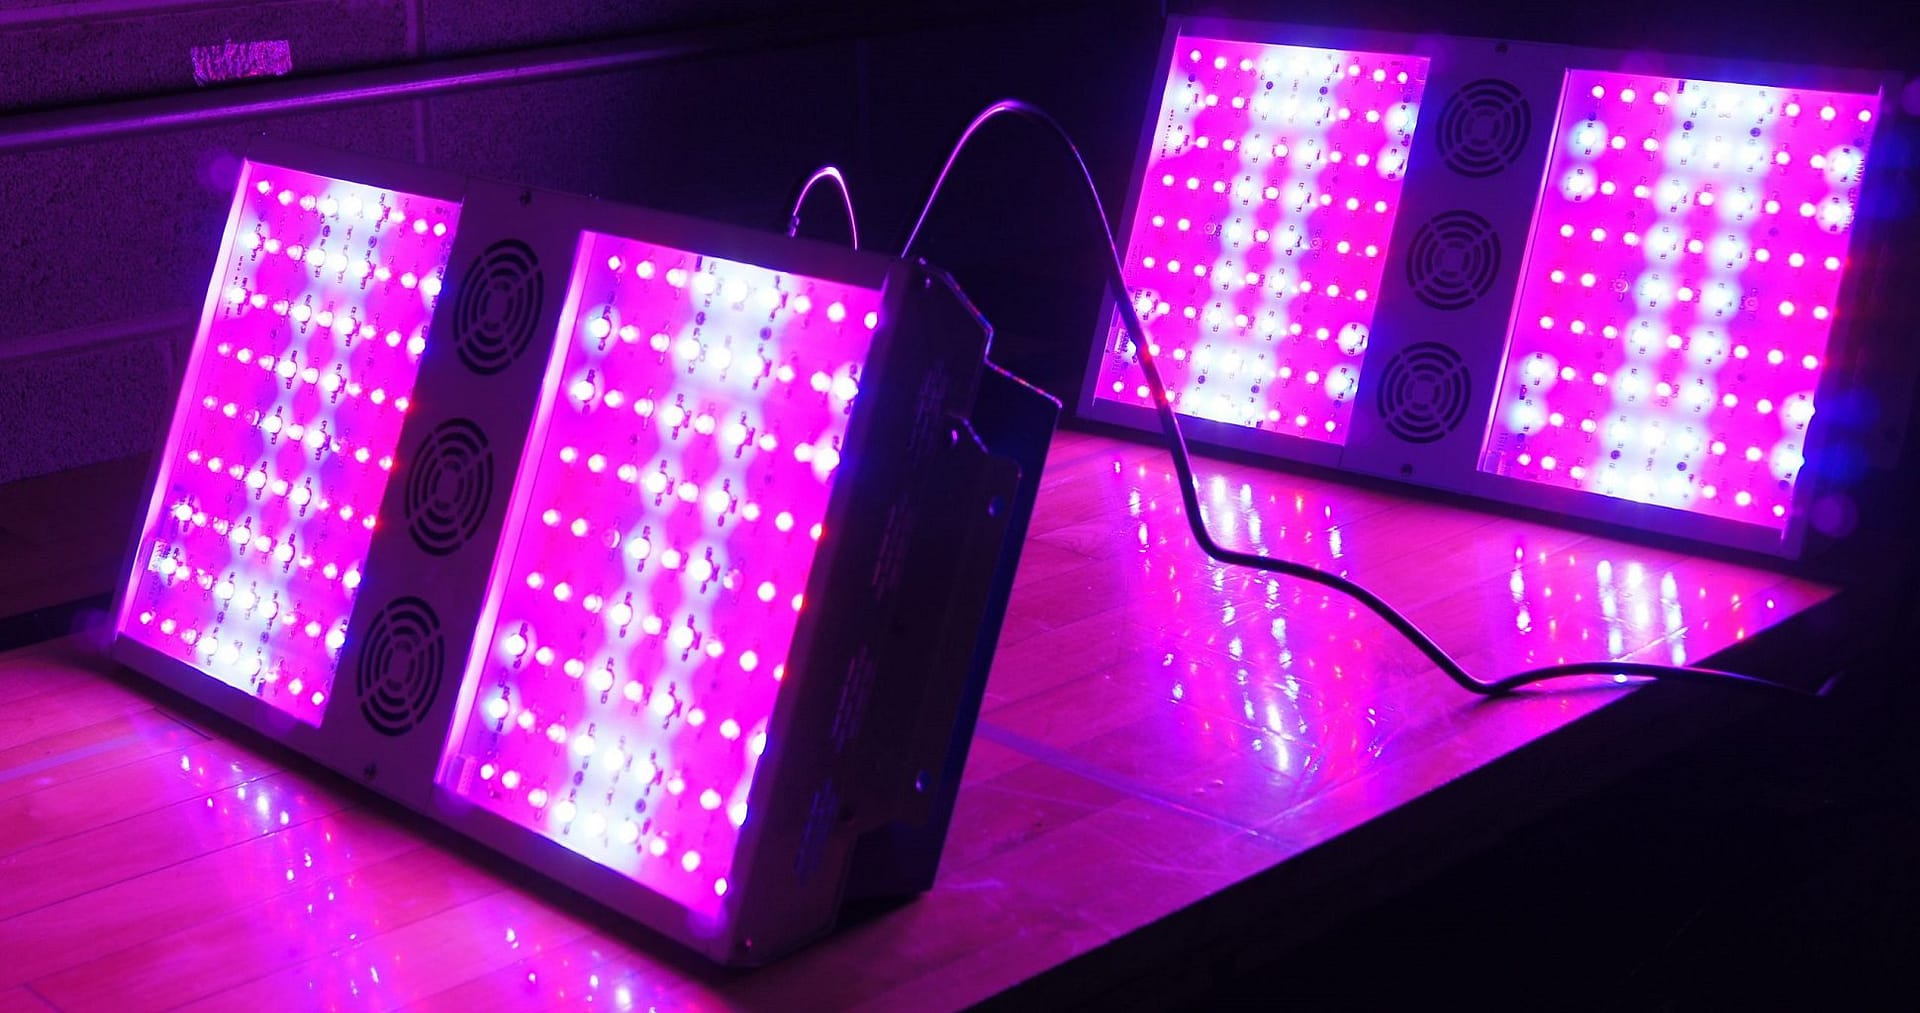 Best Full Spectrum LED Grow Lights